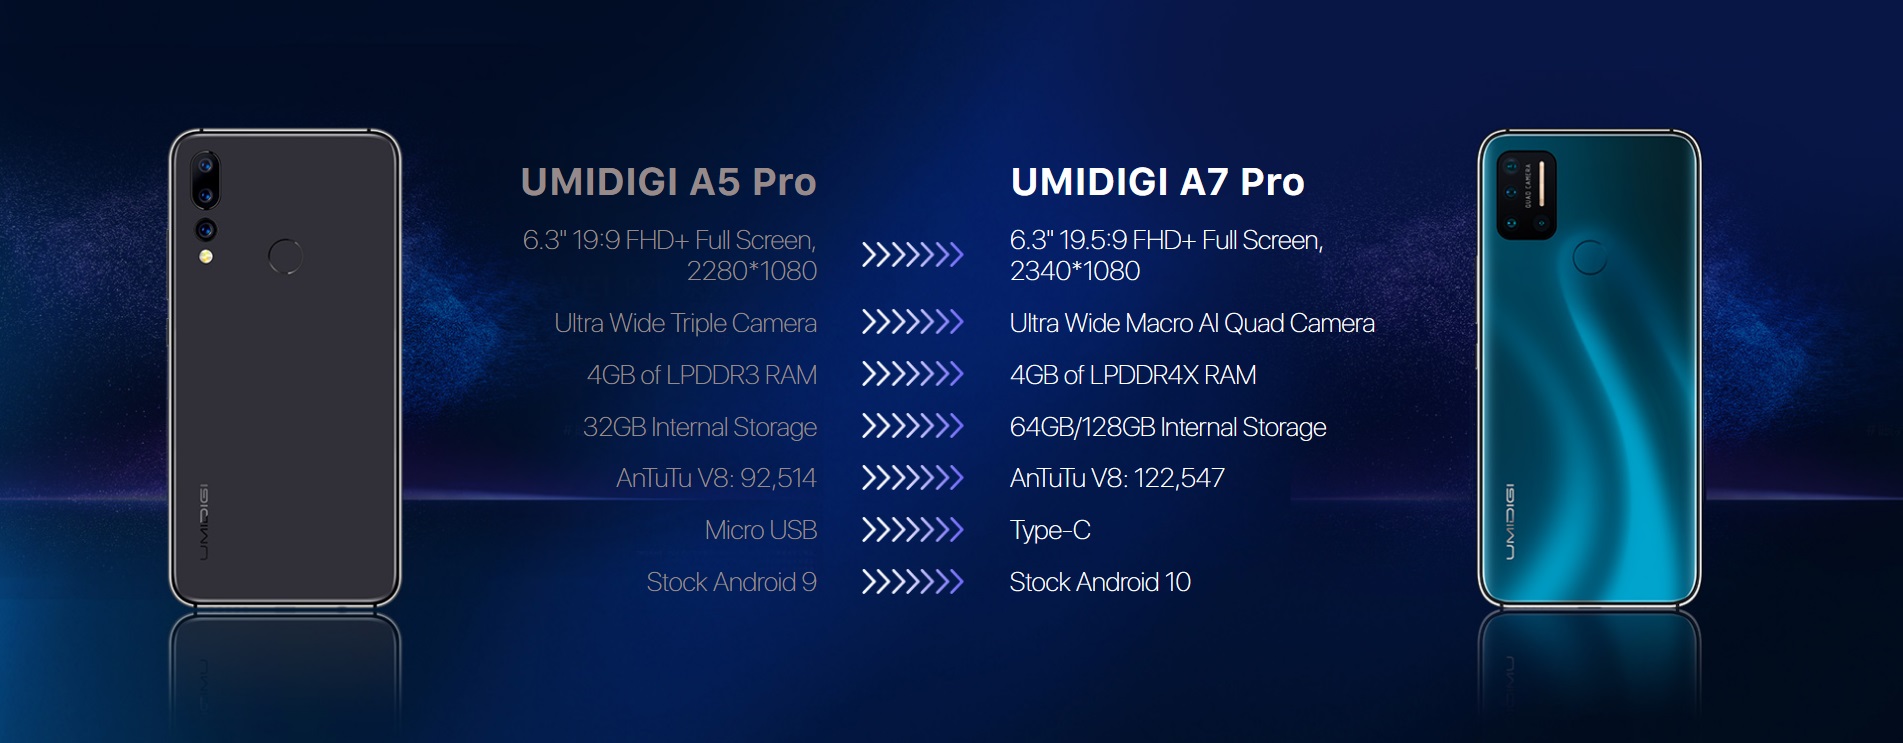 UMIDIGI A7 Pro Buy